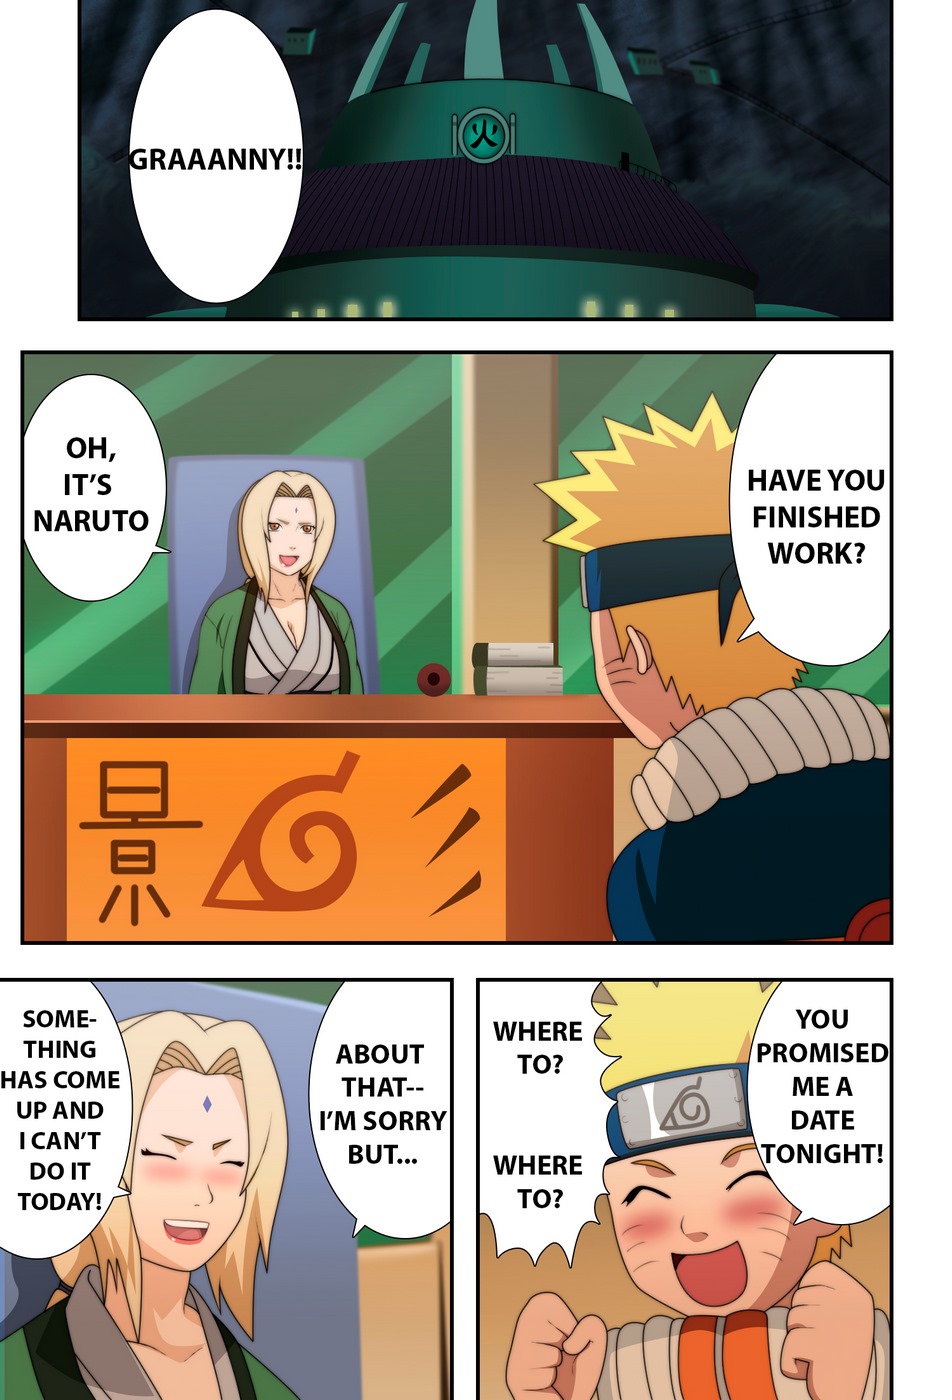 Naruto (naruho) chichikage Grande seno Ninja